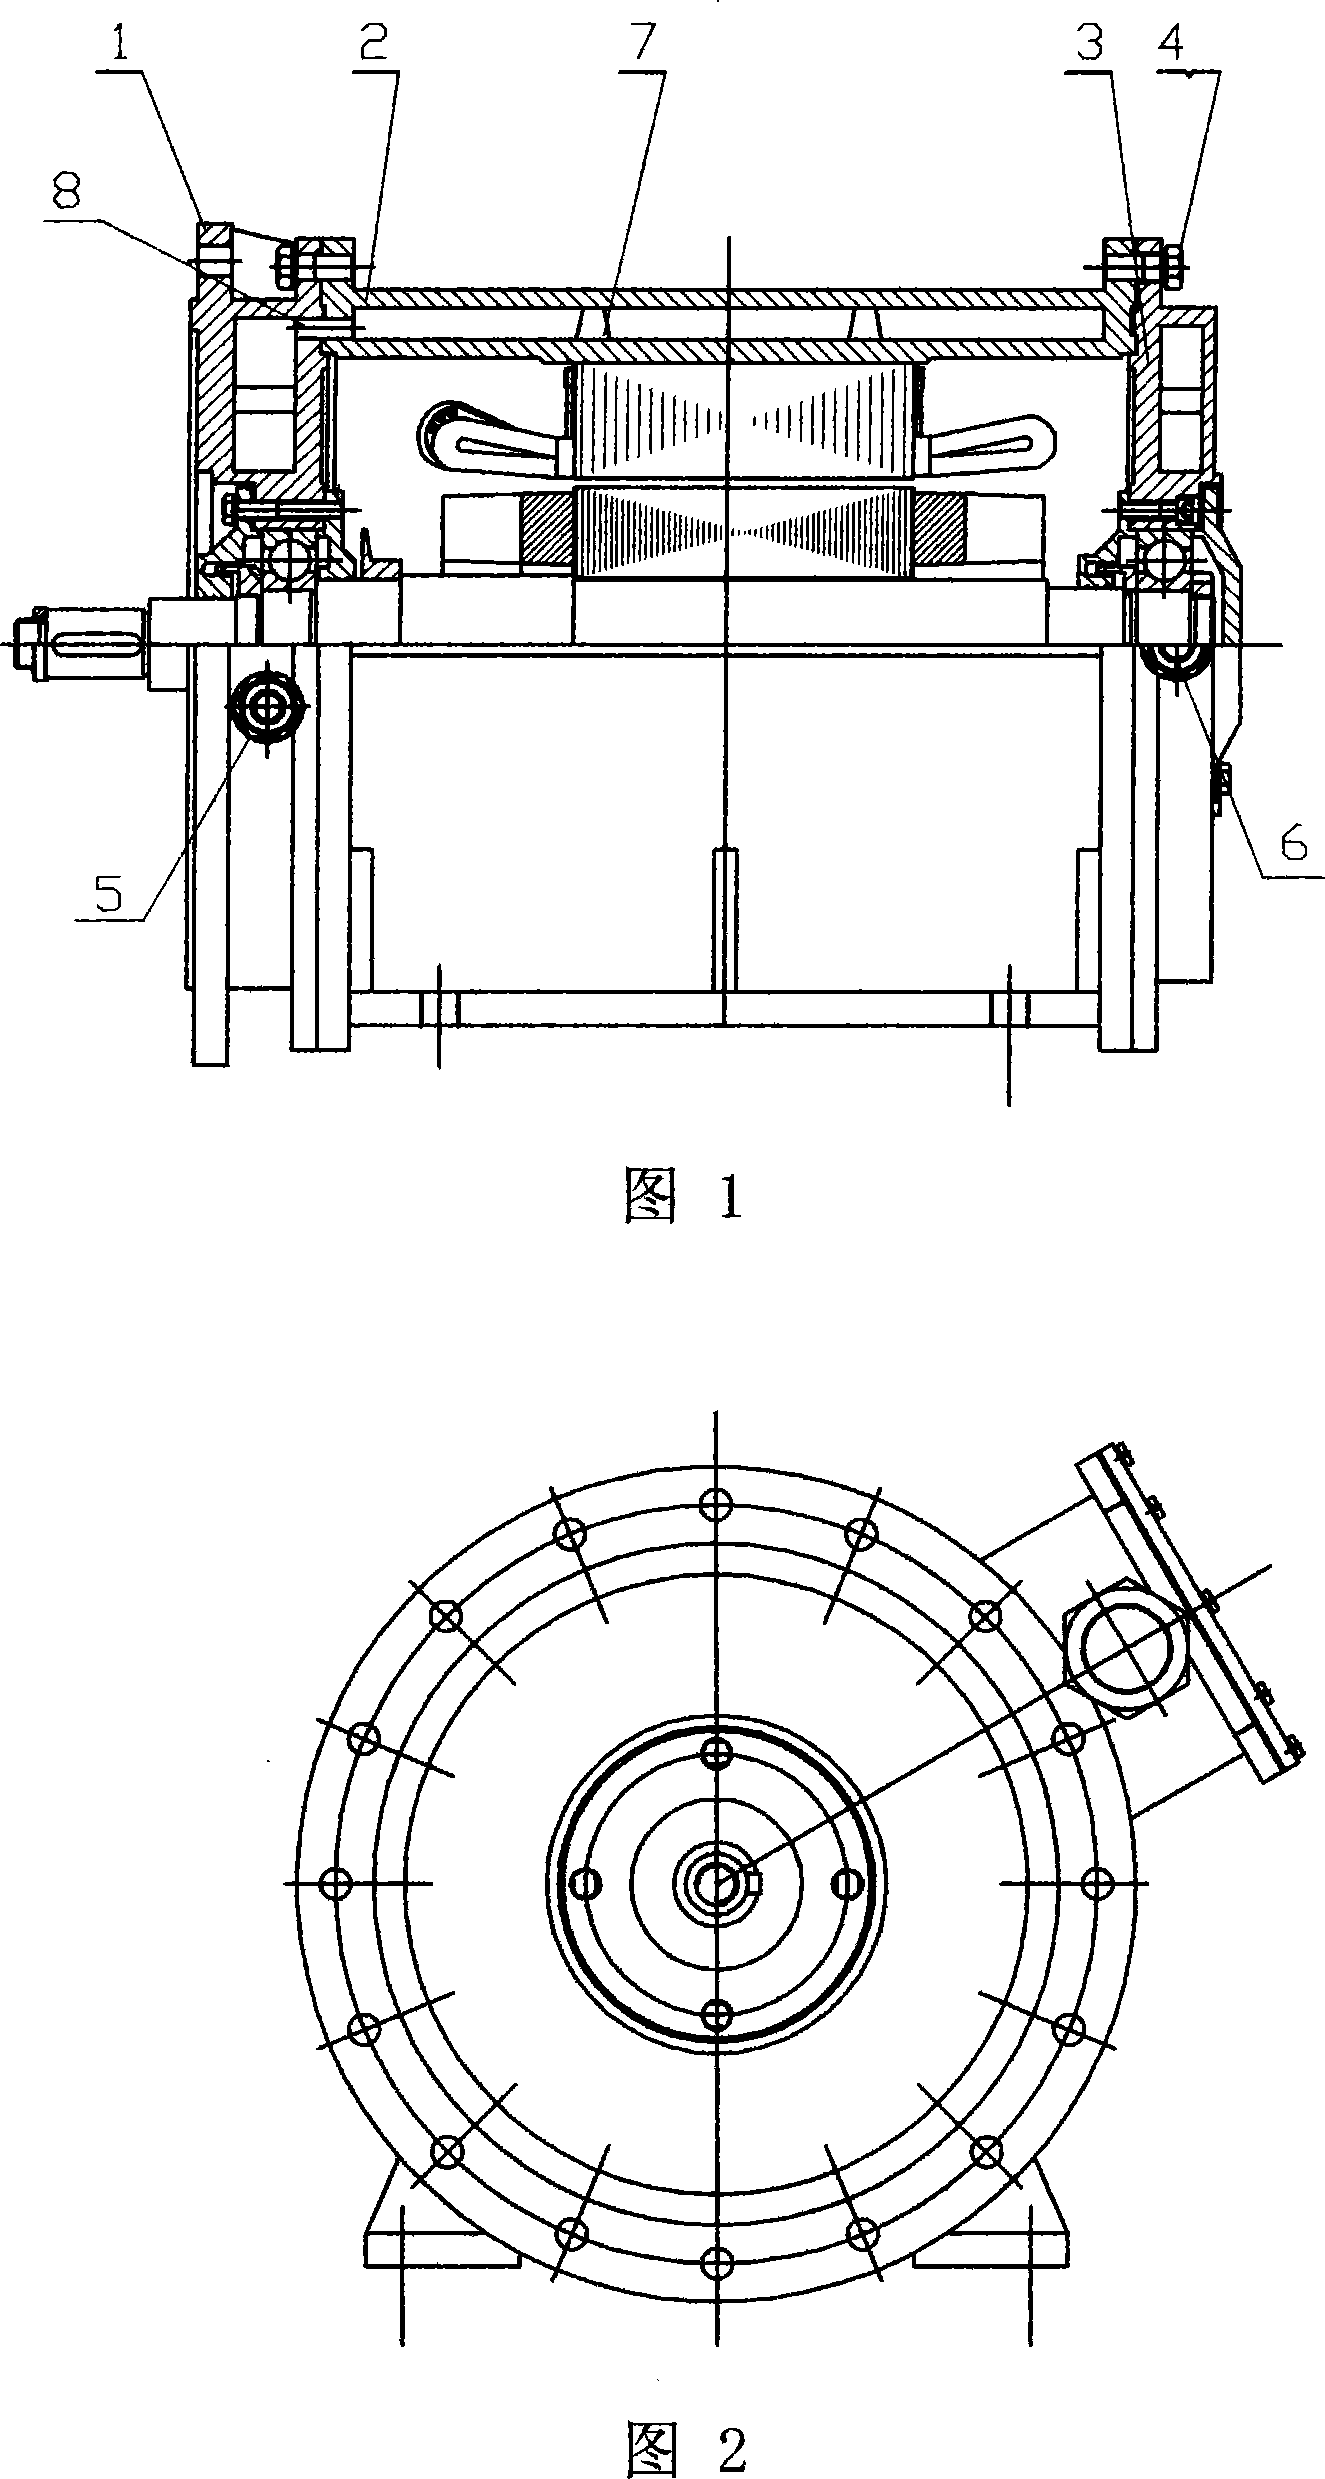 Internal water cooling motor